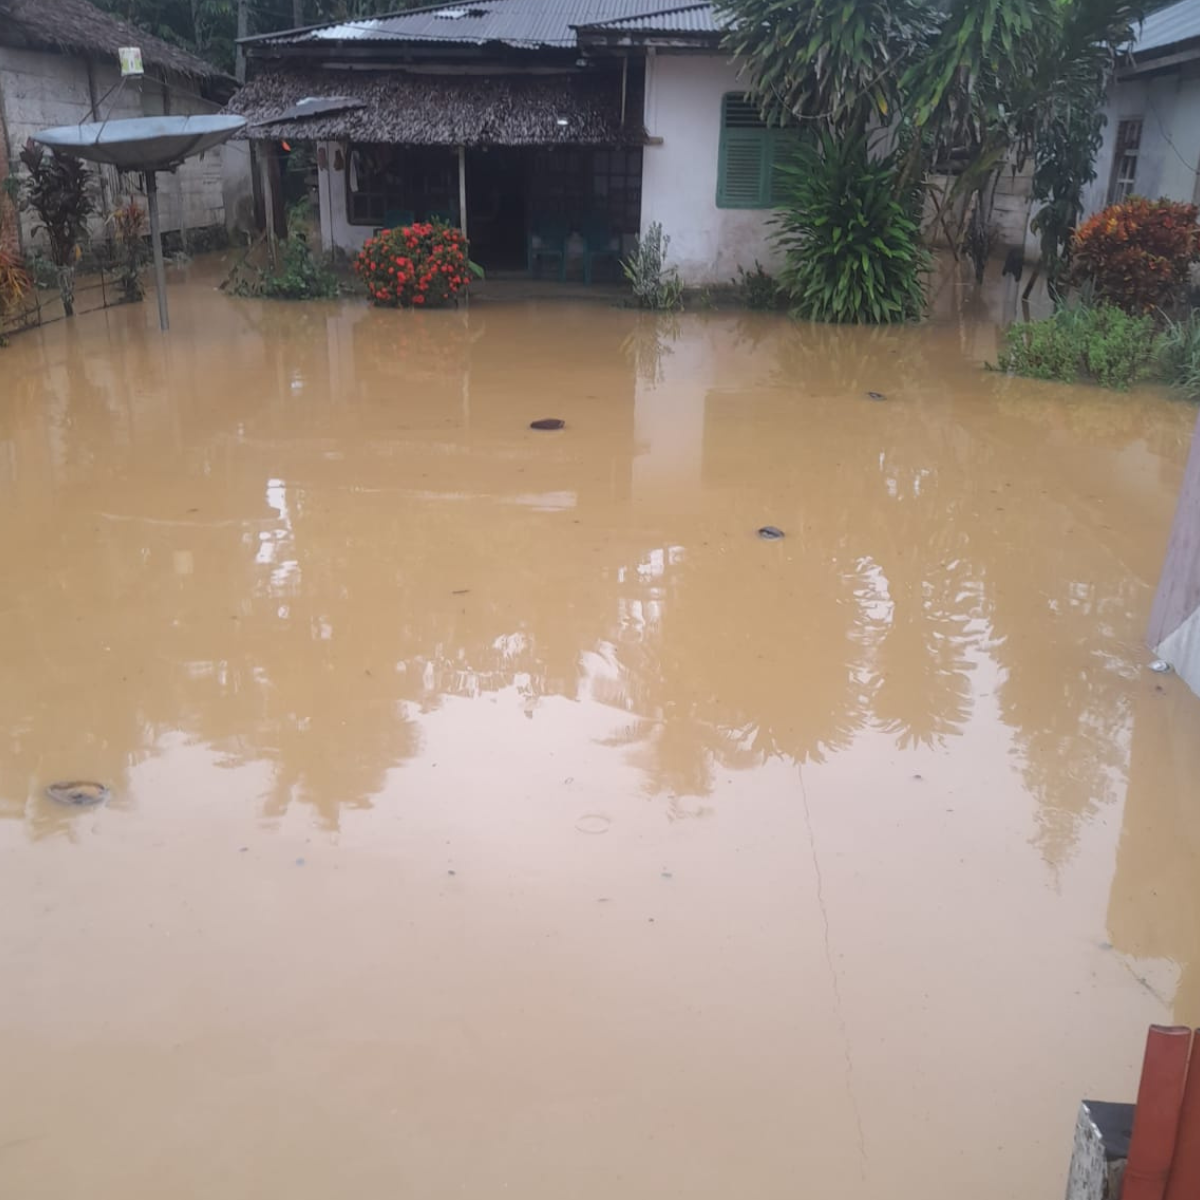 BREAKING NEWS: Banjir Terjang Bolsel, Puluhan Rumah Tergenang Air